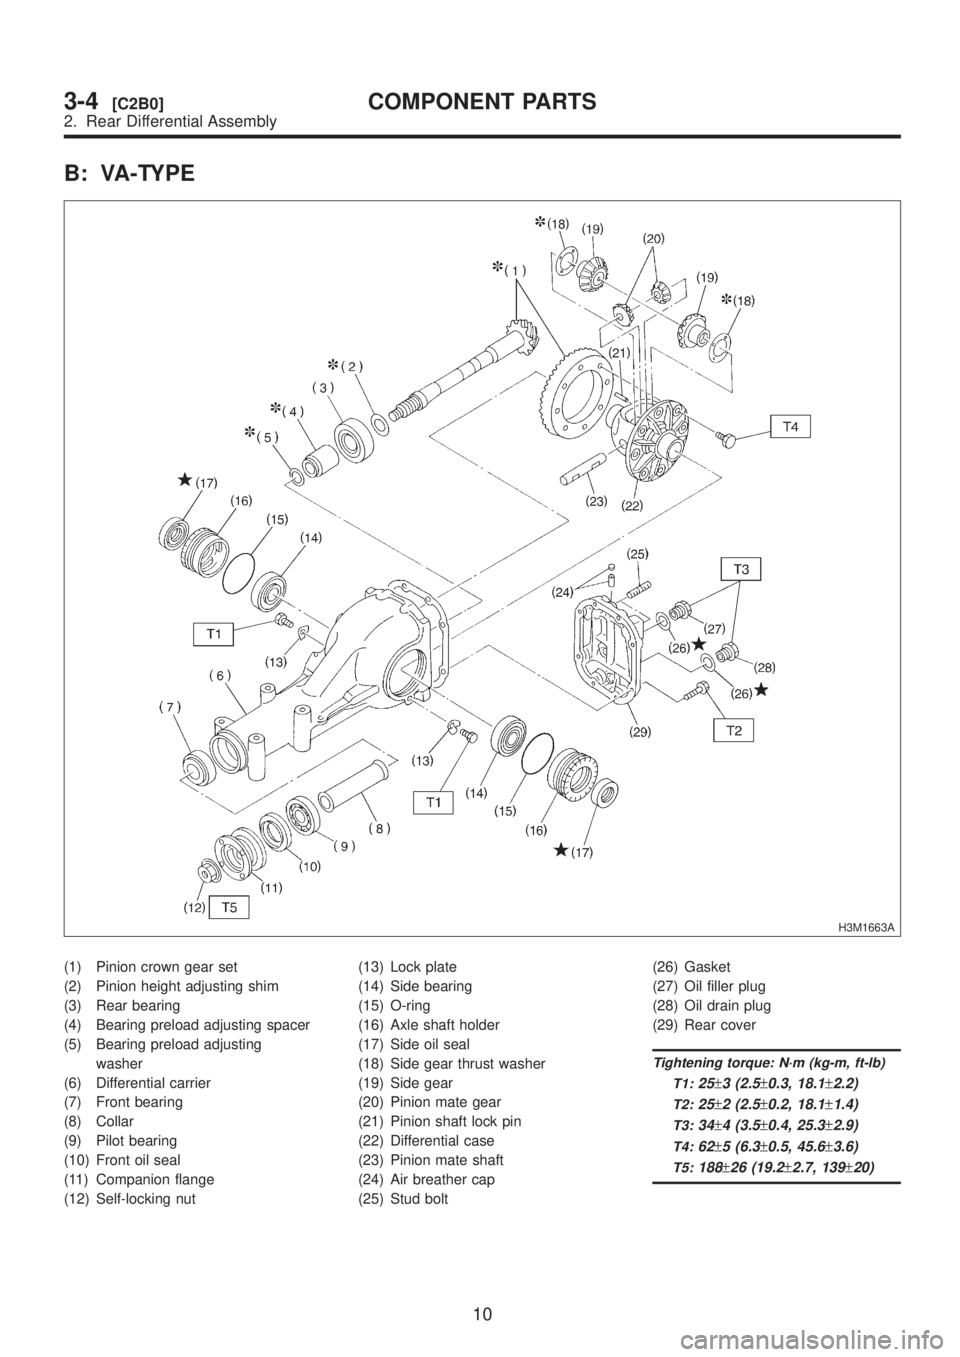 SUBARU LEGACY 1999  Service Repair Manual B: VA-TYPE
H3M1663A
(1) Pinion crown gear set
(2) Pinion height adjusting shim
(3) Rear bearing
(4) Bearing preload adjusting spacer
(5) Bearing preload adjusting
washer
(6) Differential carrier
(7) F